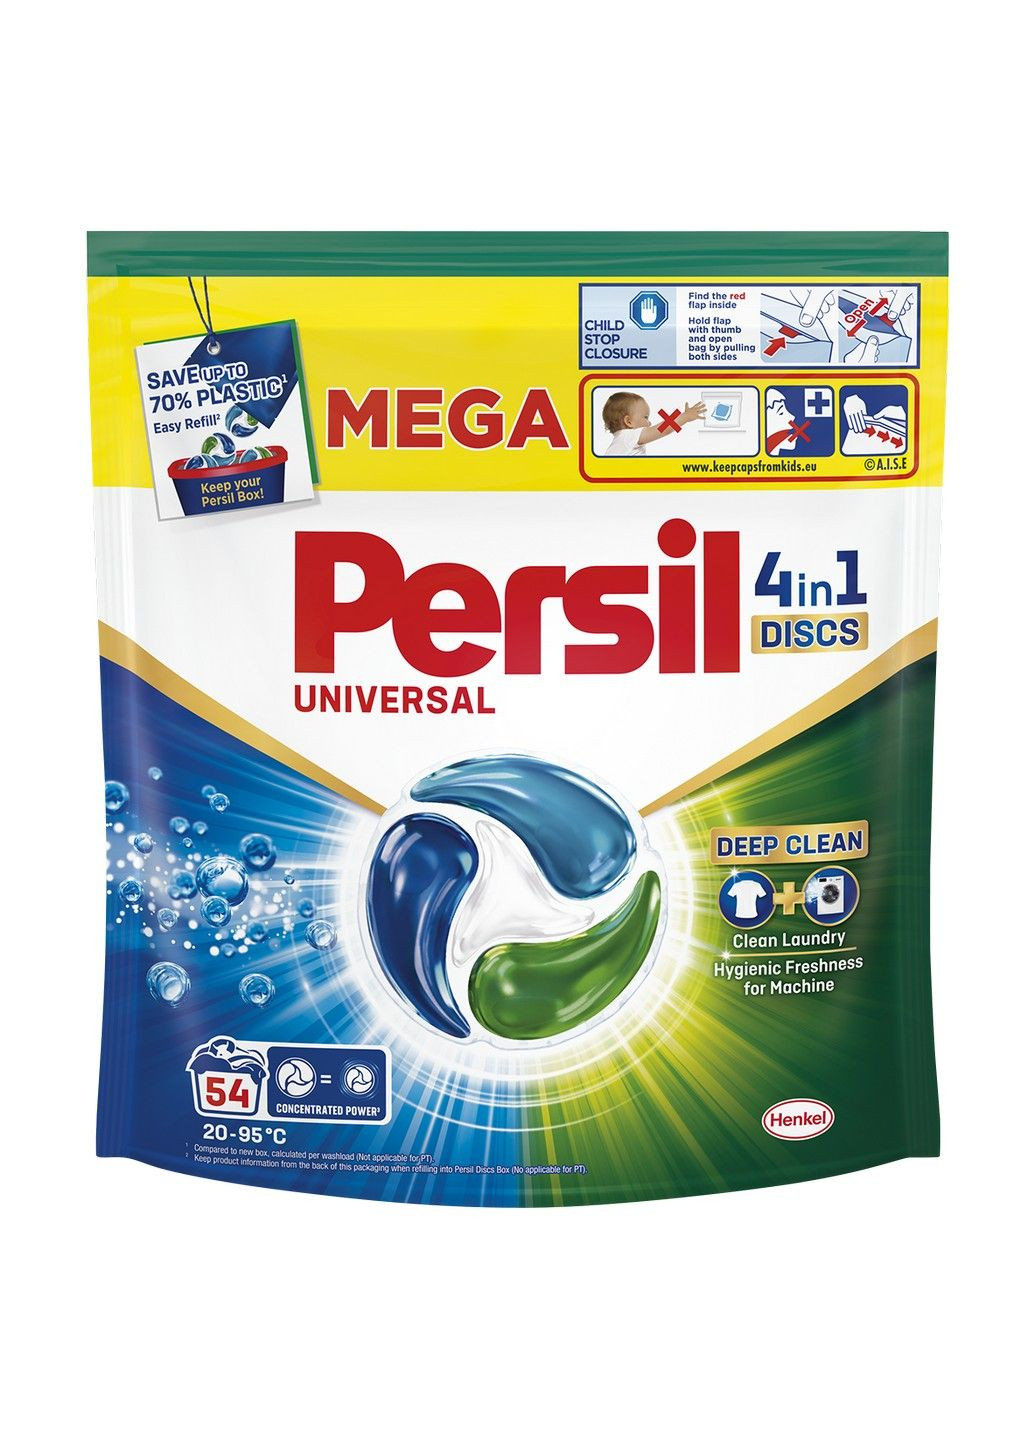 Диски для прання 4in1 Discs Universal Deep Clean 54 шт Persil (293343740)